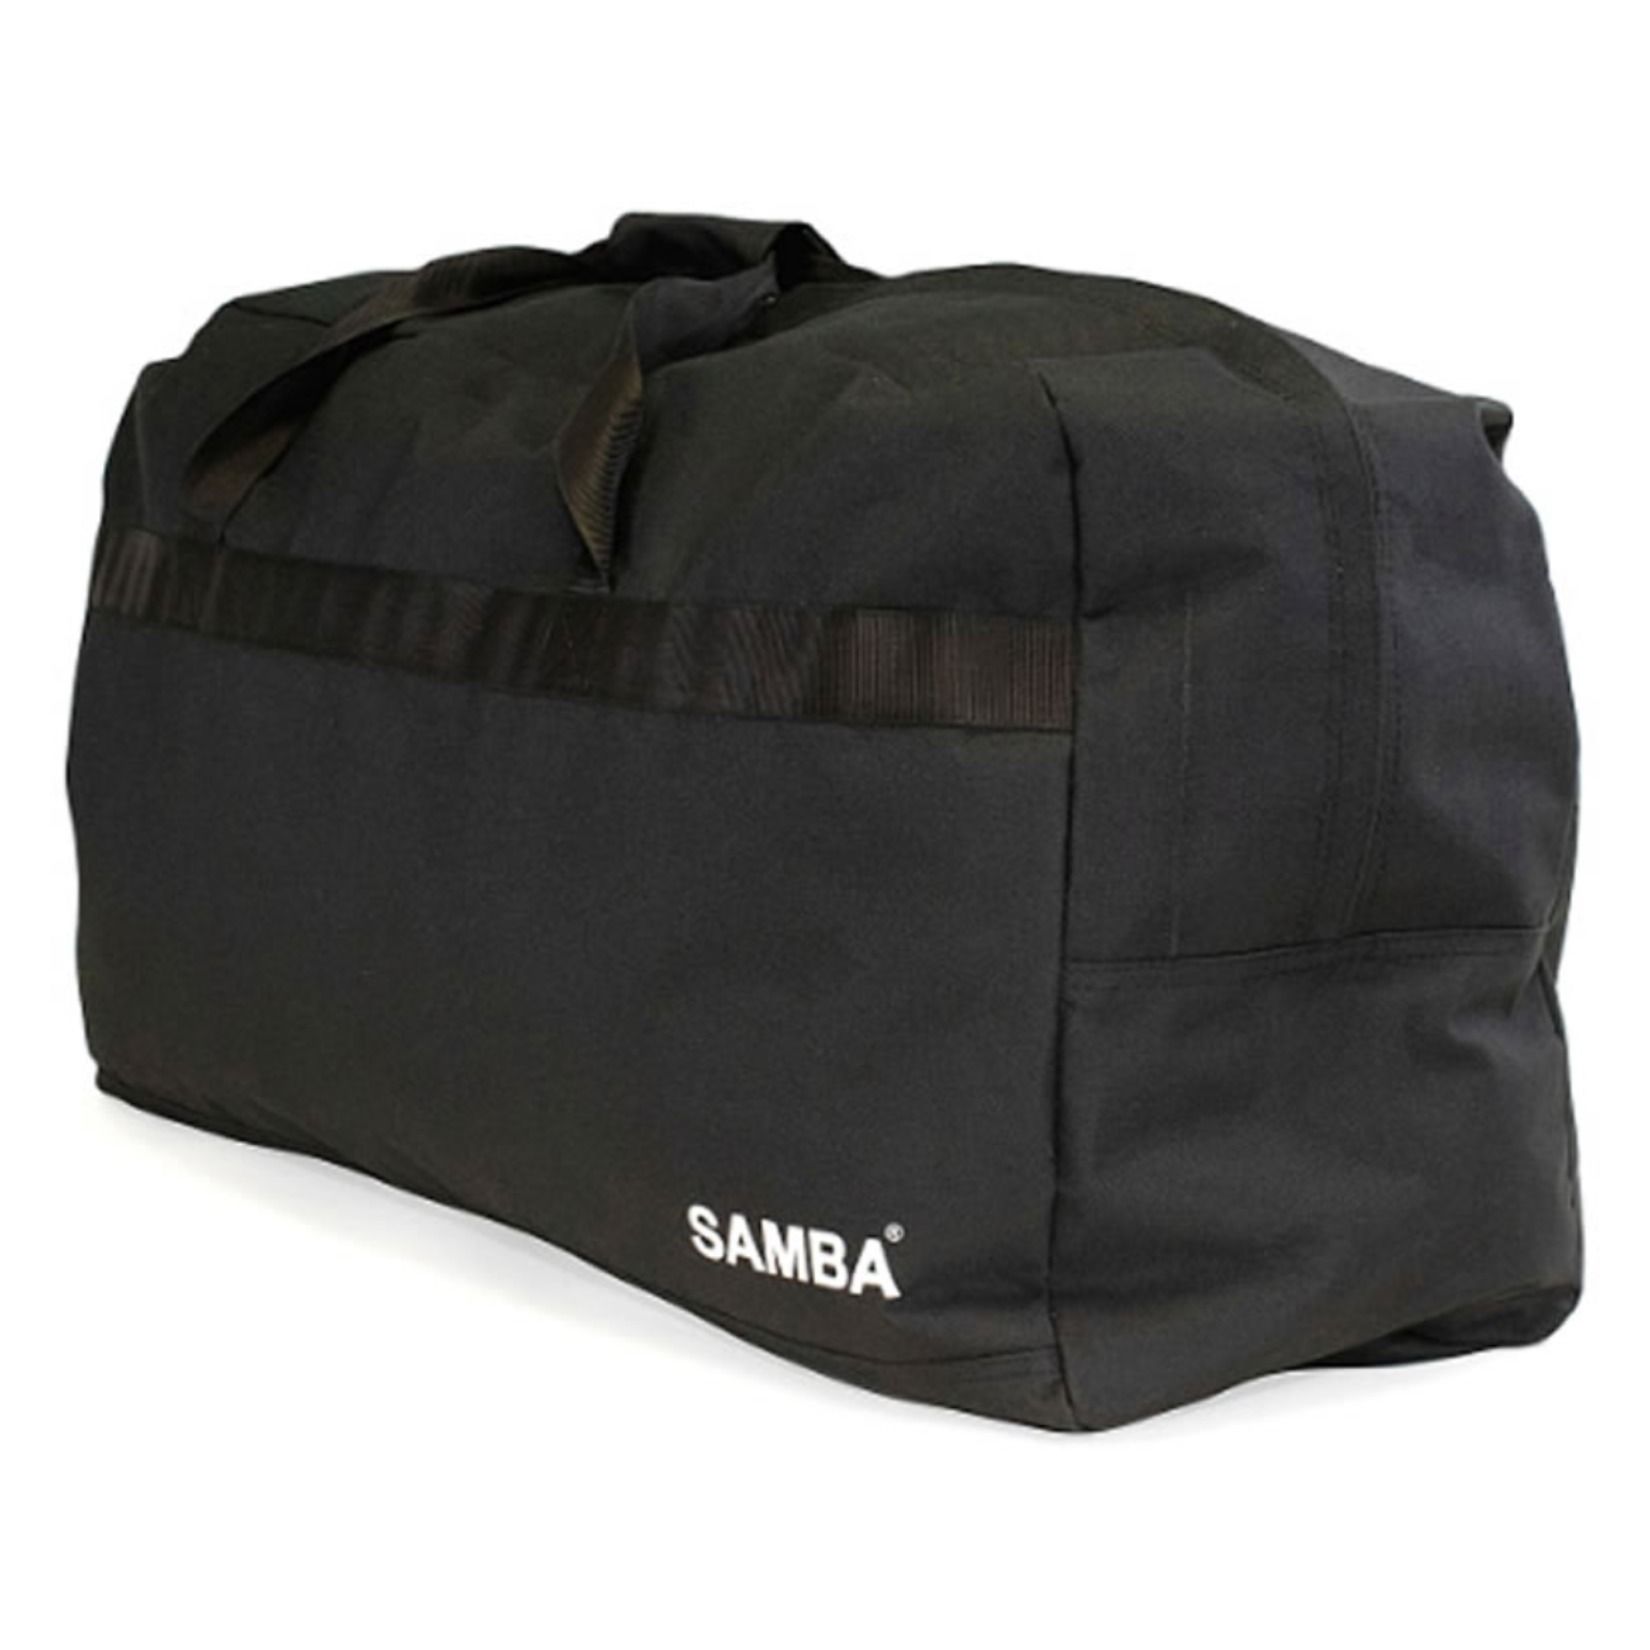 Samba Team kit Bag